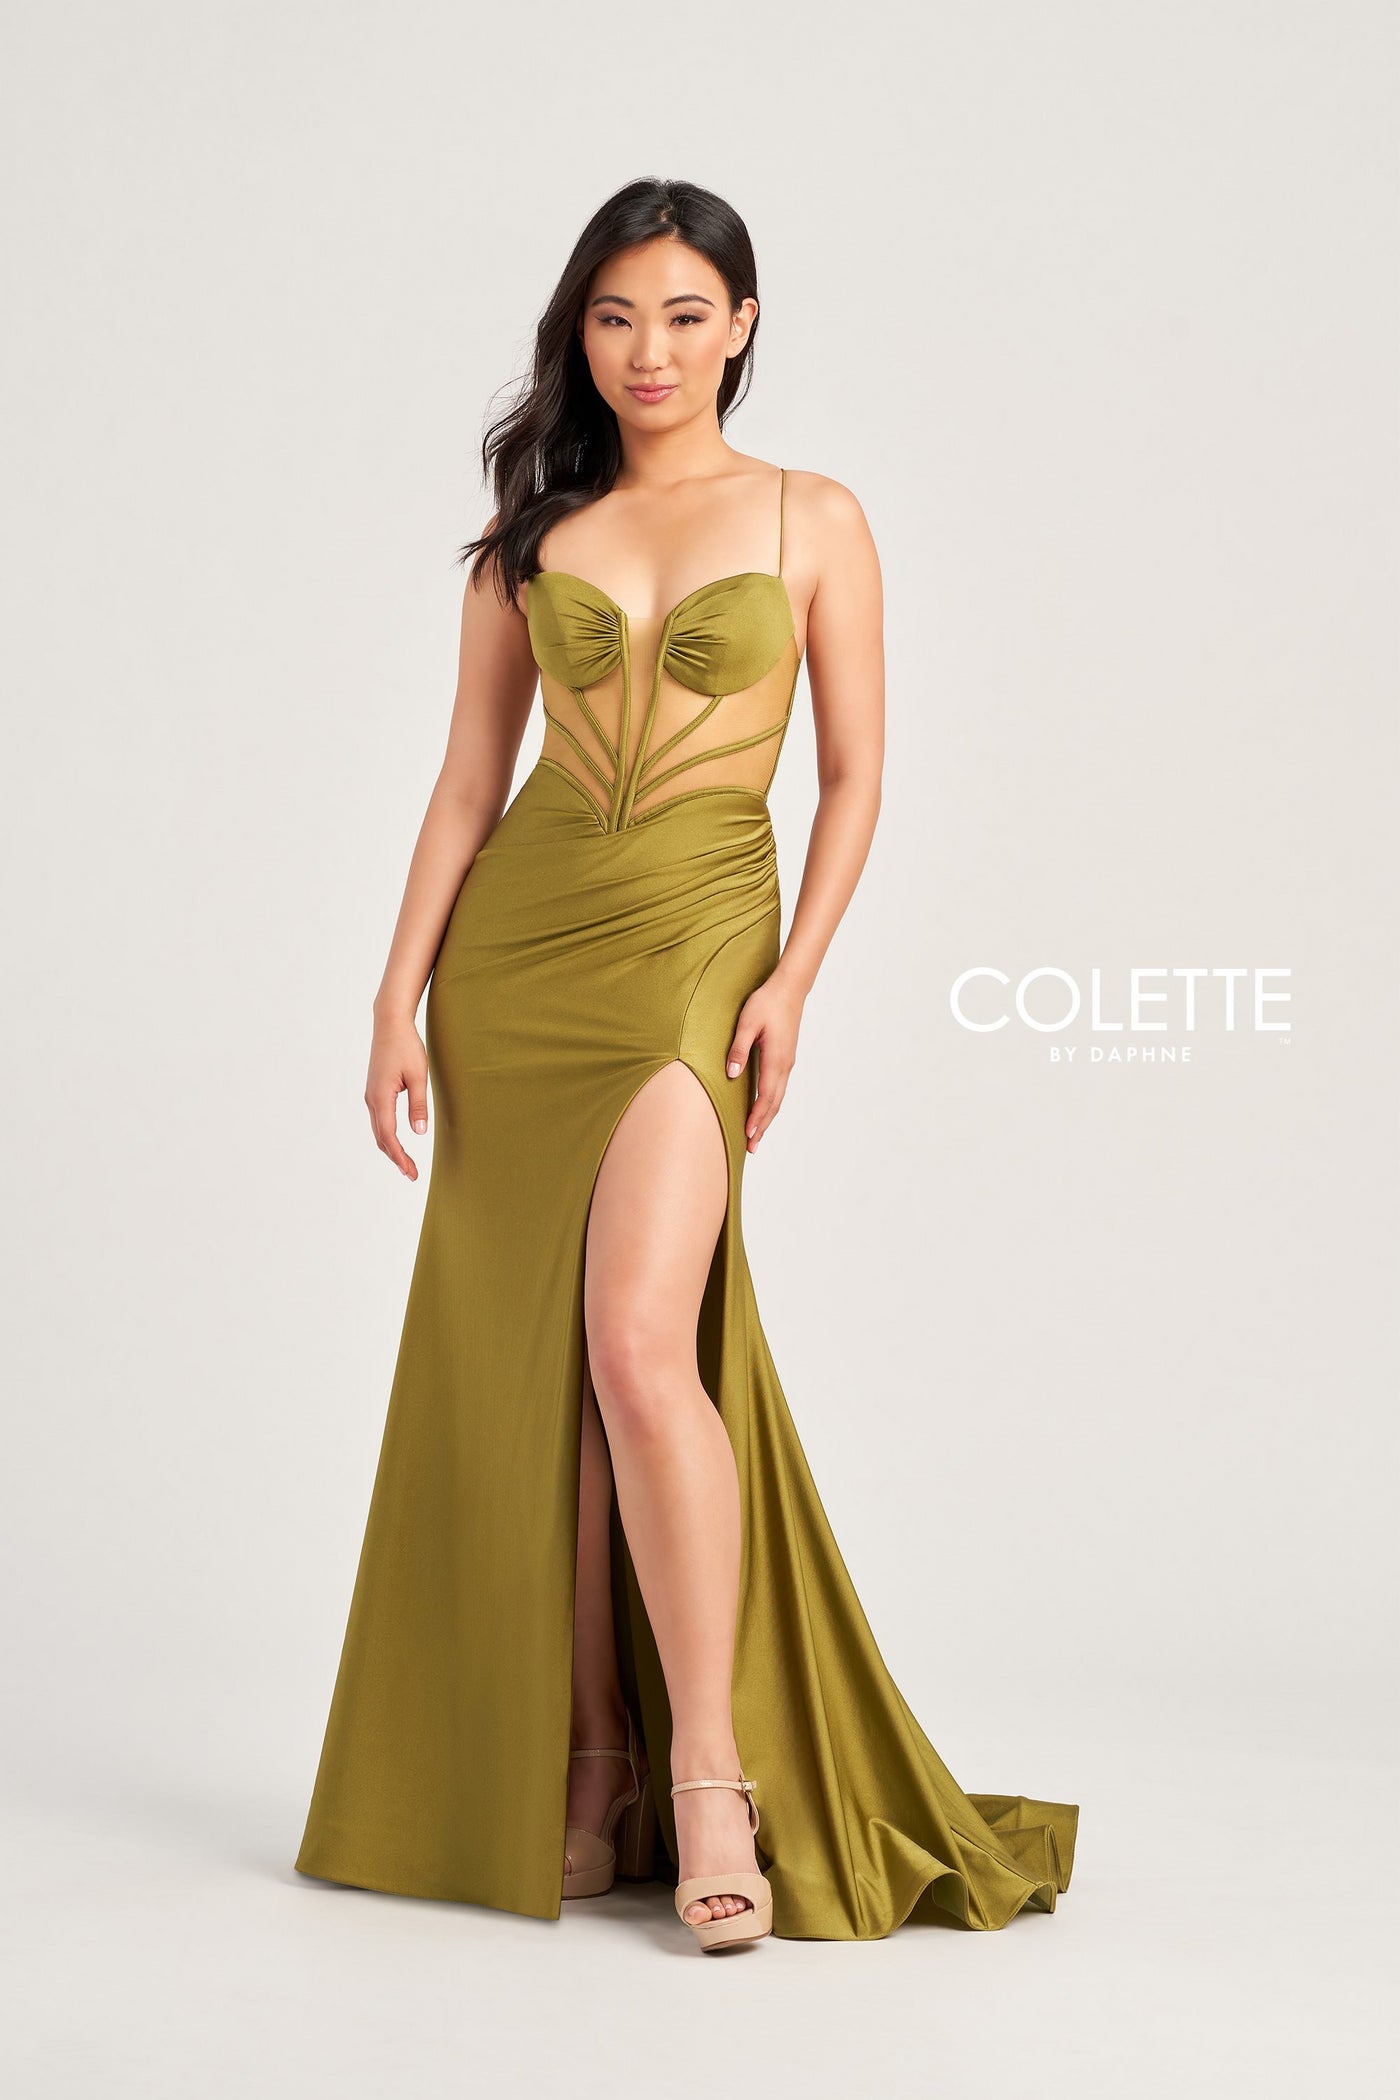 Colette CL5140